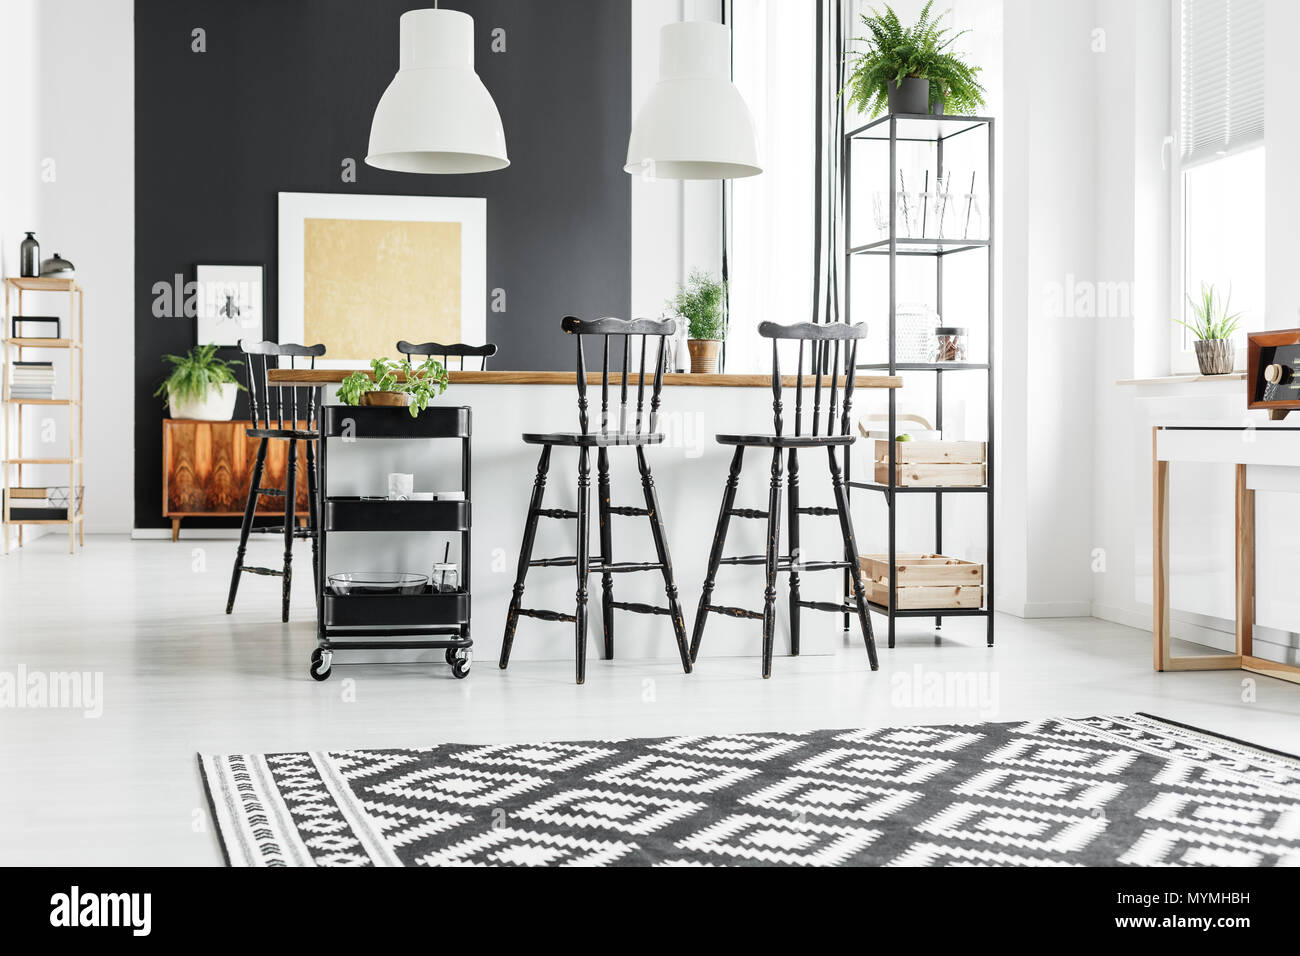 Tapis géométriques noir et blanc dans la cuisine rustique avec tabourets de bar au comptoir en bois Banque D'Images